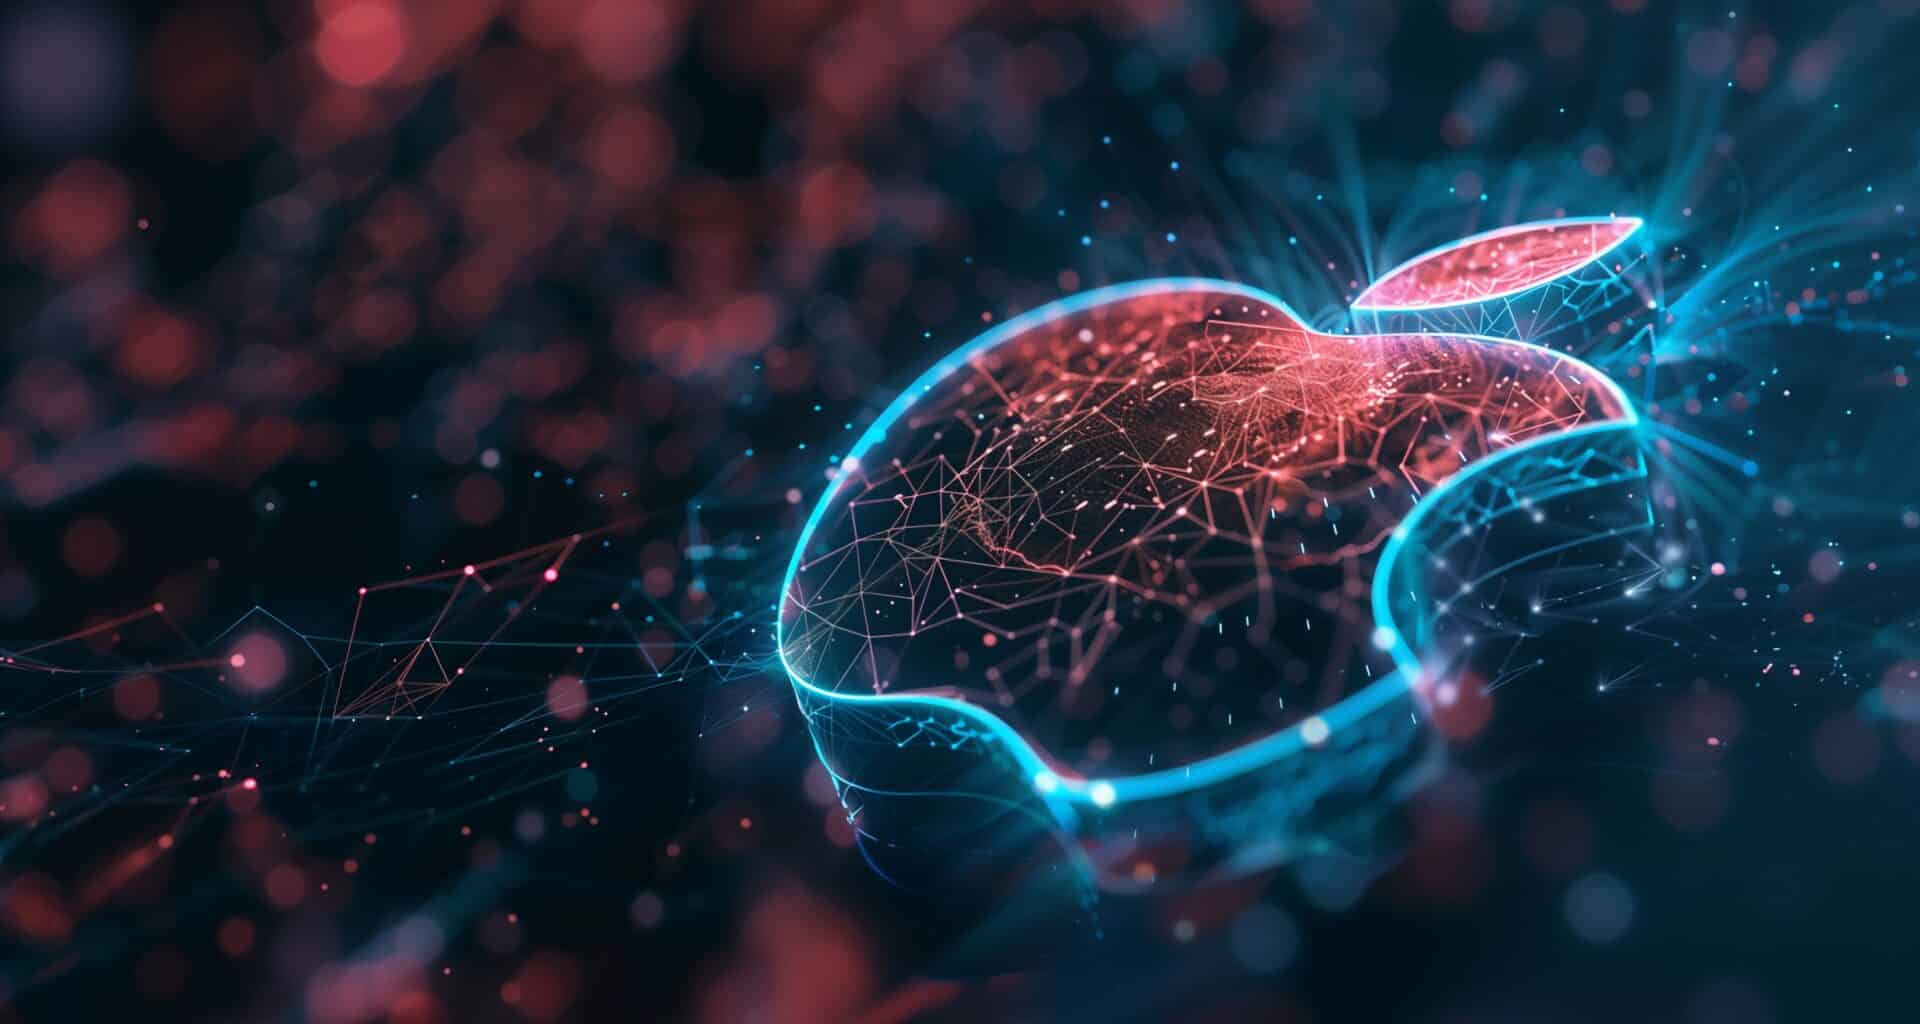 Logo da Apple em estilo futurístico com redes neurais e ideia de inteligência artificial (IA/AI)